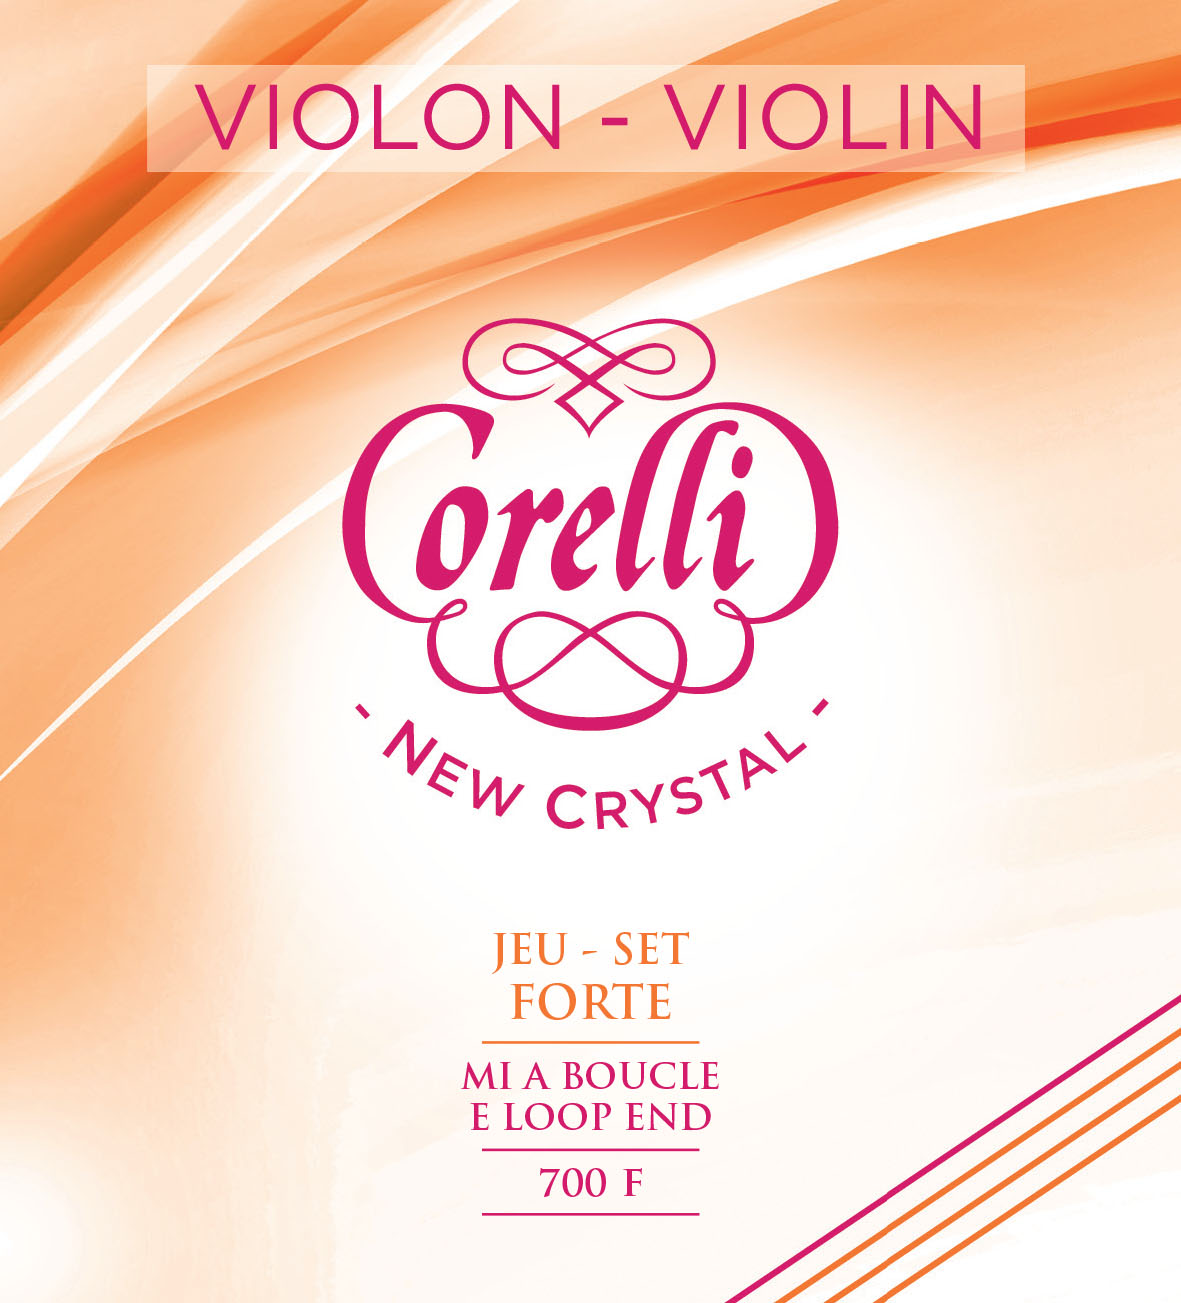  CORELLI NEW CRYSTAL FORTE 700F Violon